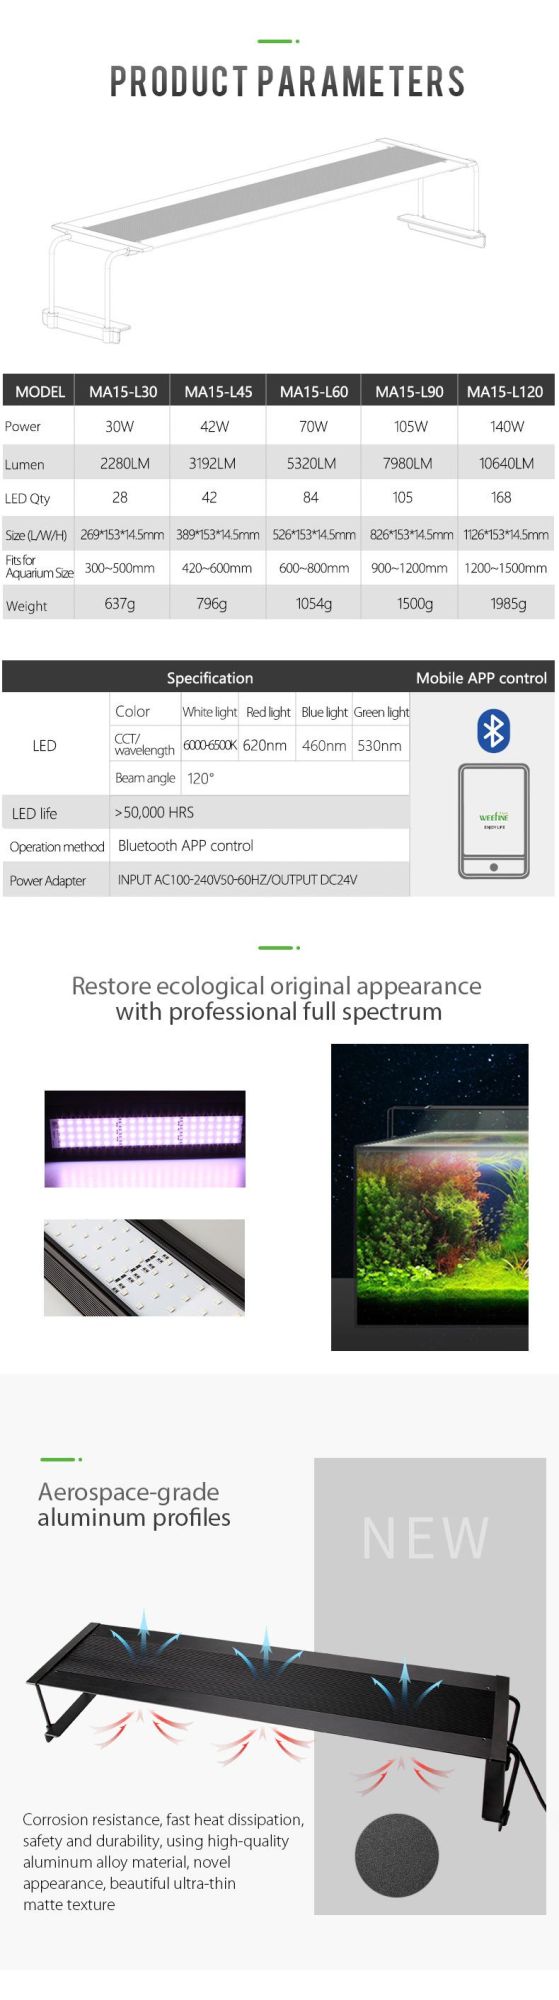 70W Wrgb Customized LED Aquarium Lights for Ultra-Thin Body Design (MA15)